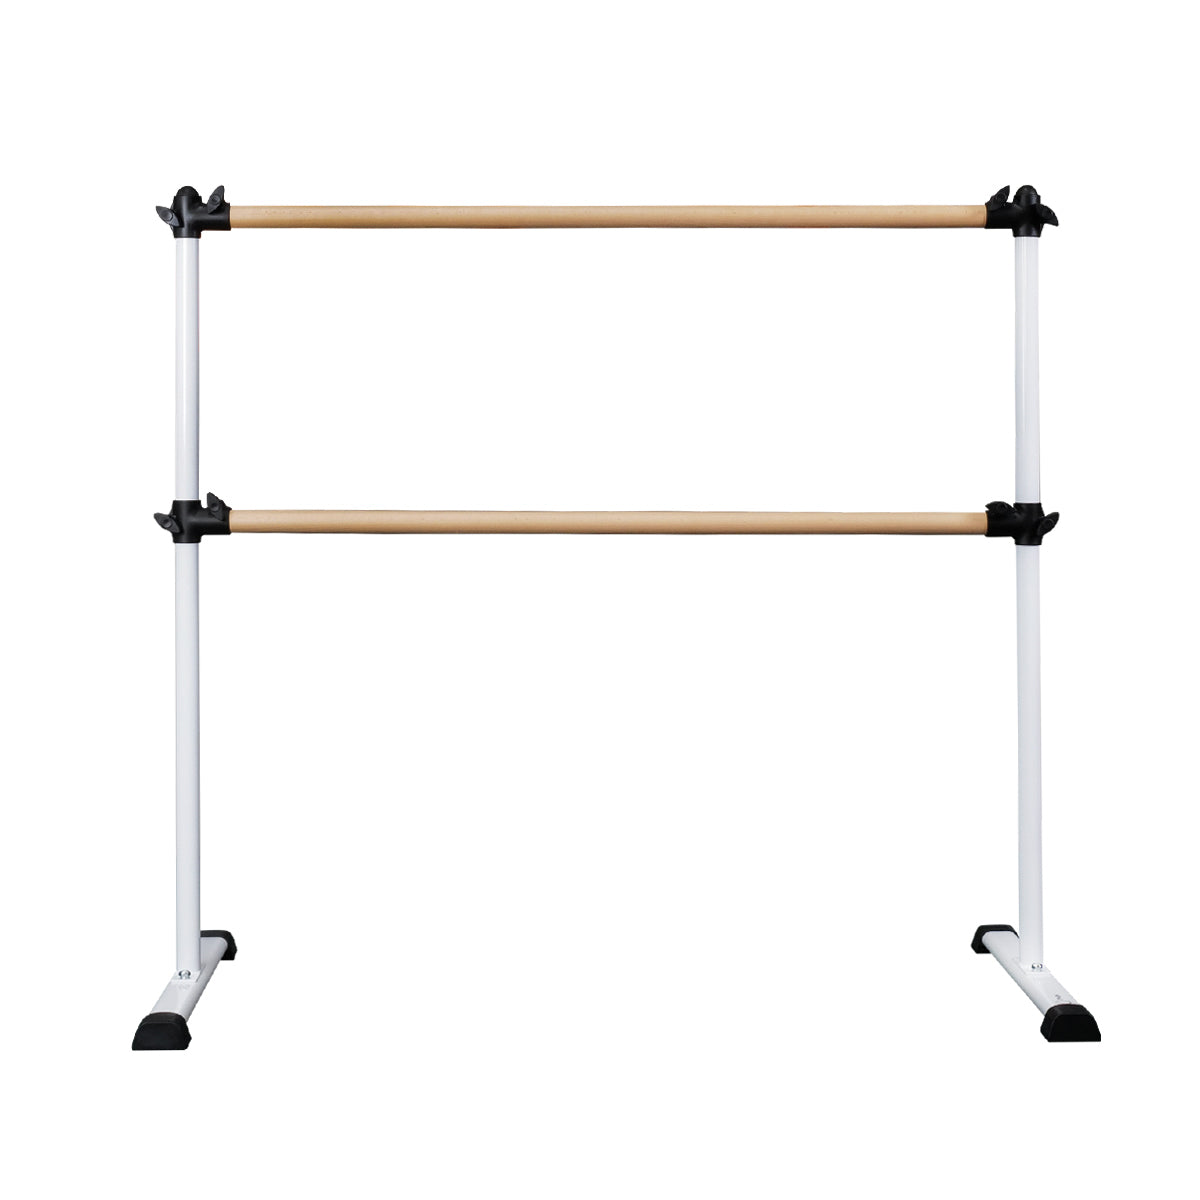 MEMAX Portable Double Ballet Barre Stretch Bar - 140cm